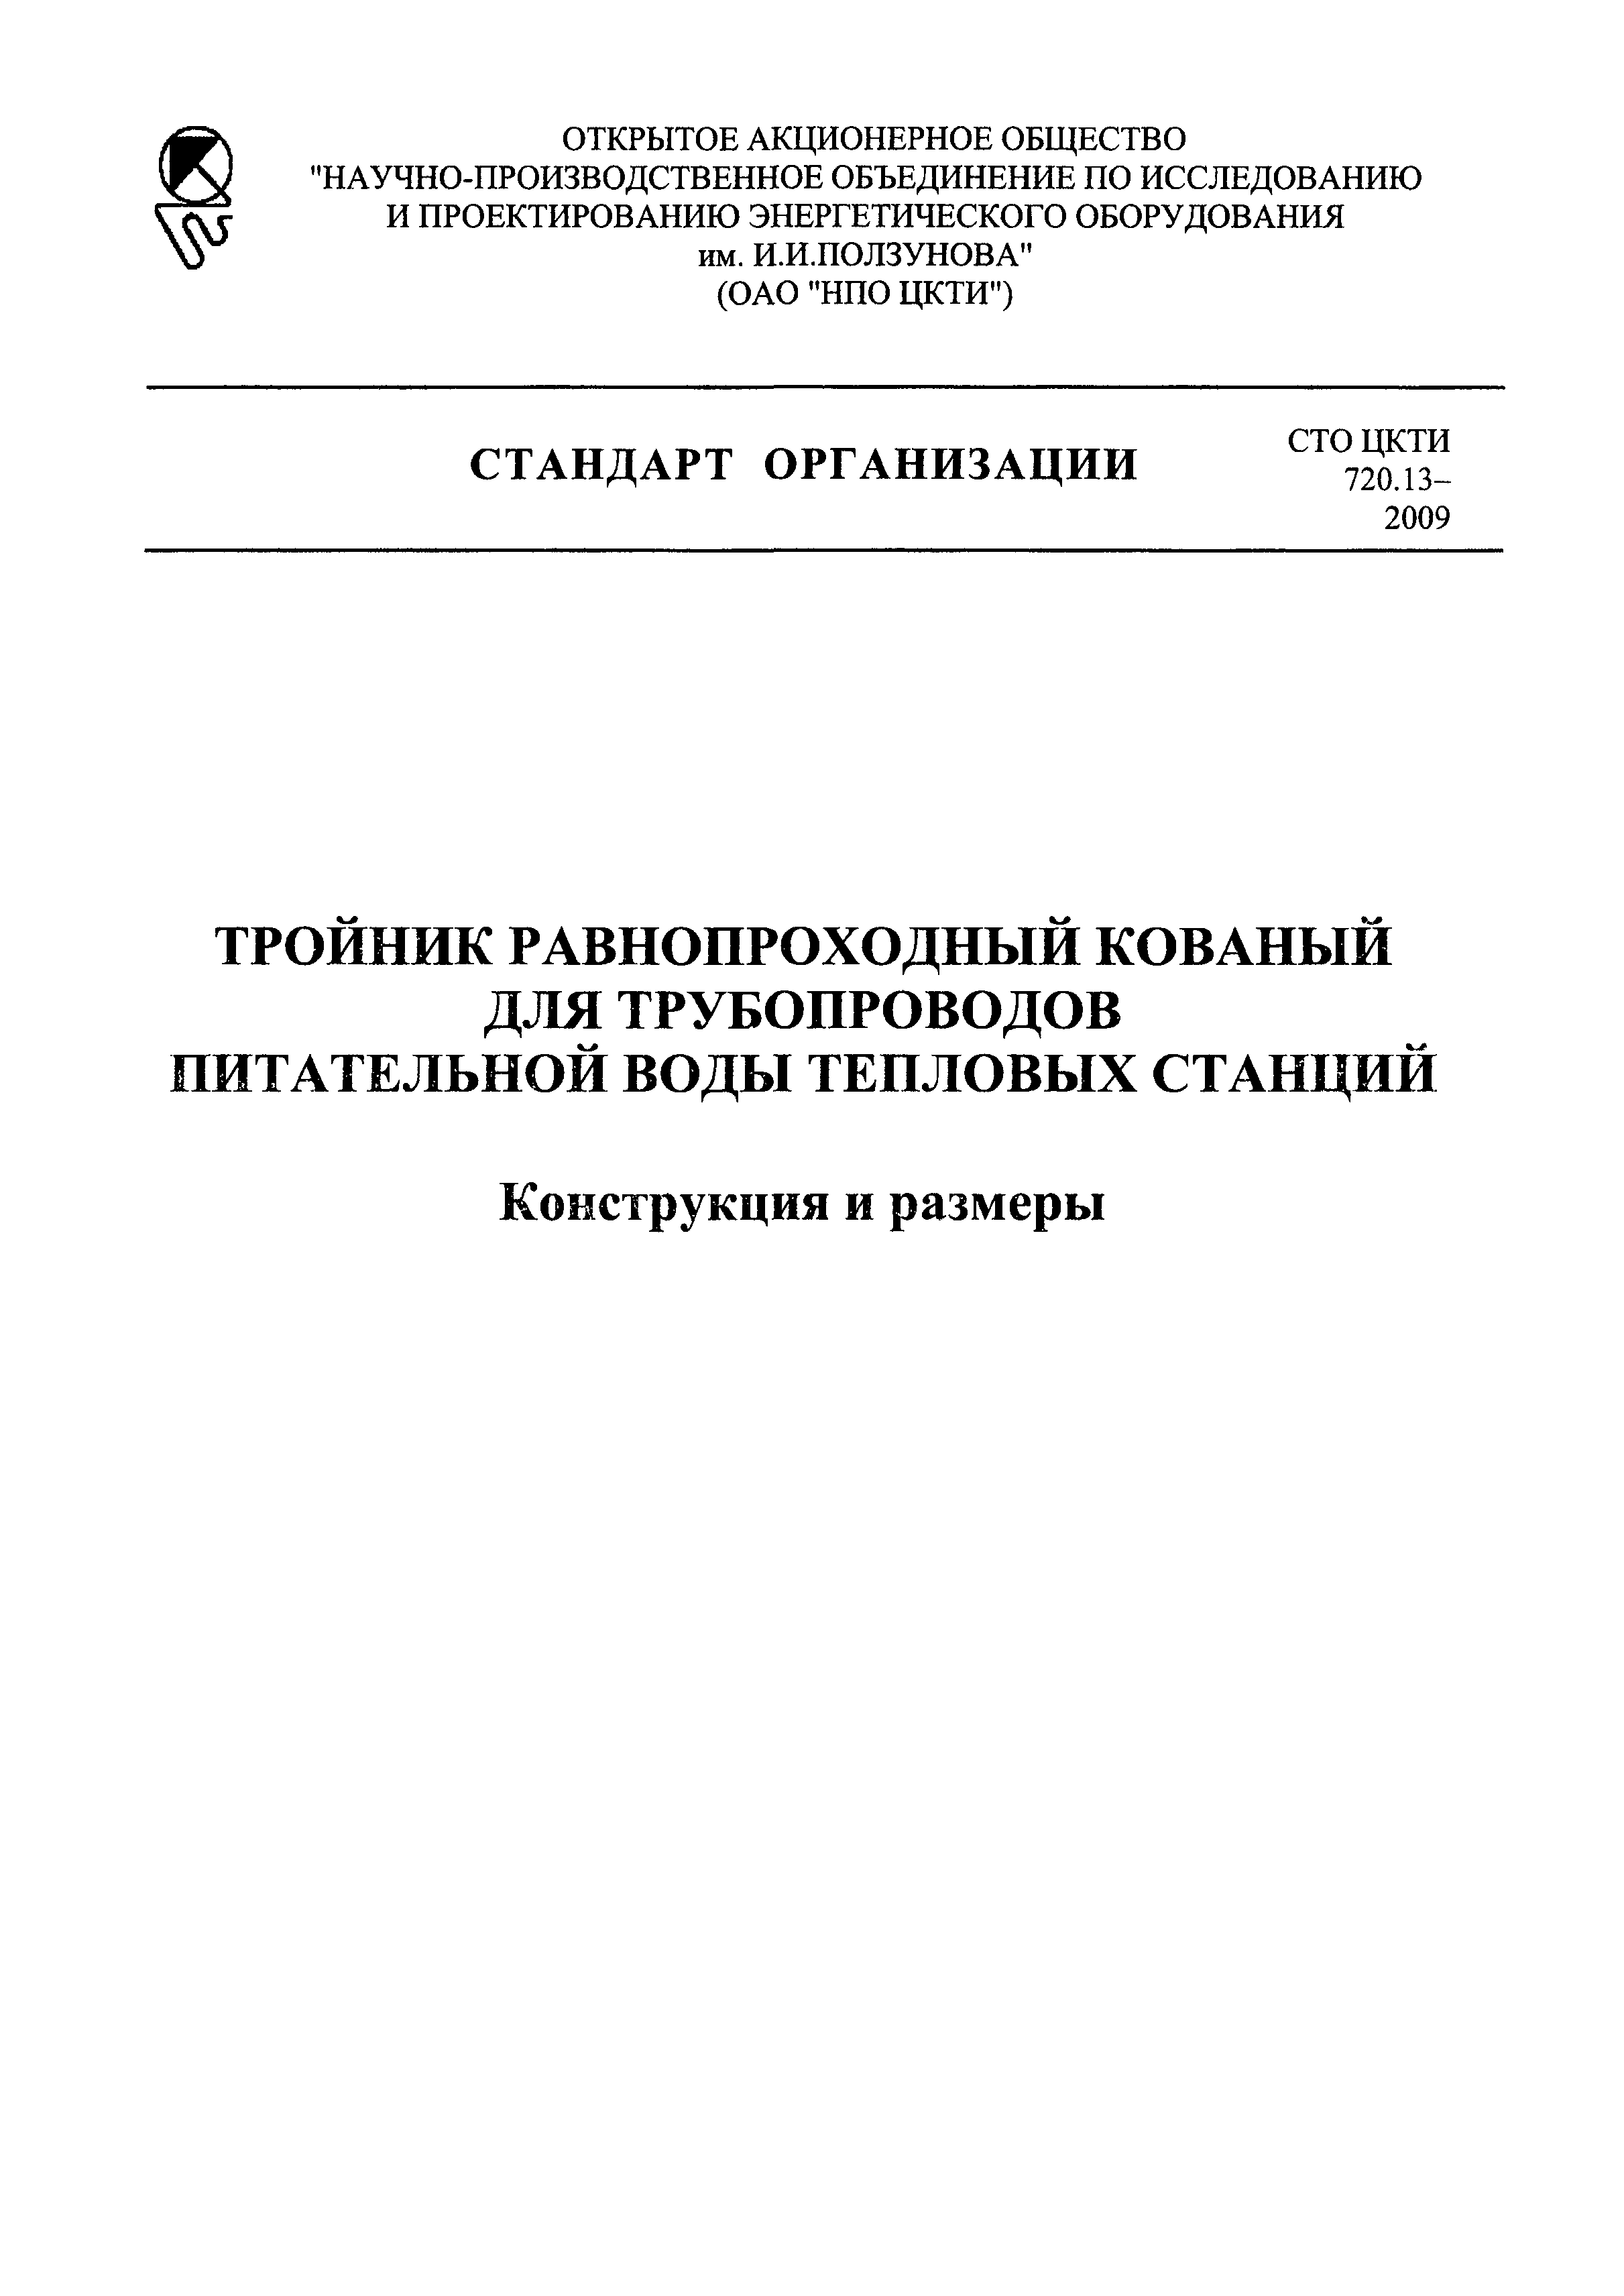 СТО ЦКТИ 720.13-2009